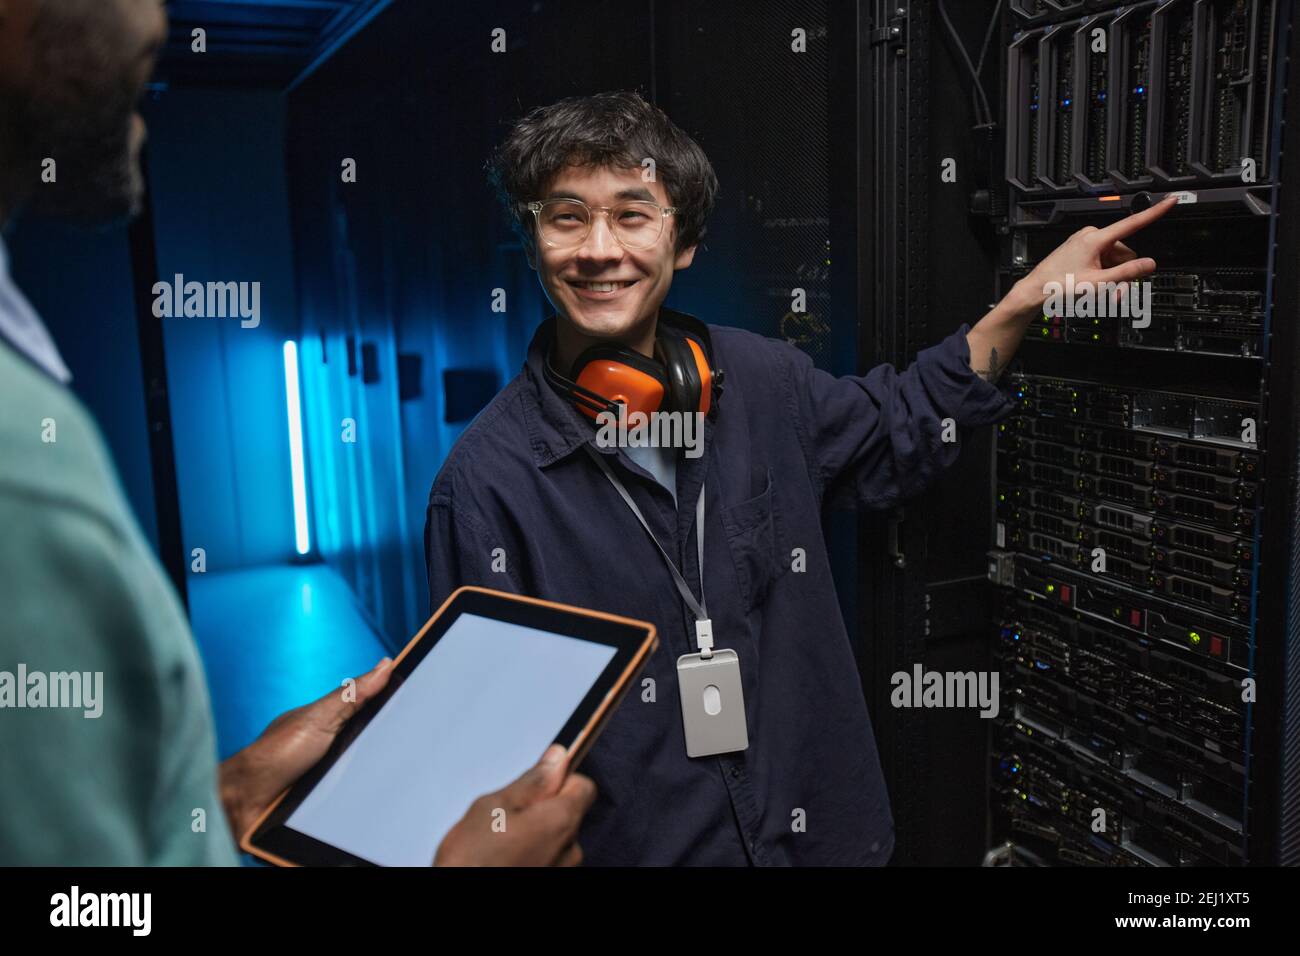 Ritratto di un uomo asiatico sorridente che guarda un collega durante la configurazione di server di supercomputer nel data center, spazio di copia Foto Stock